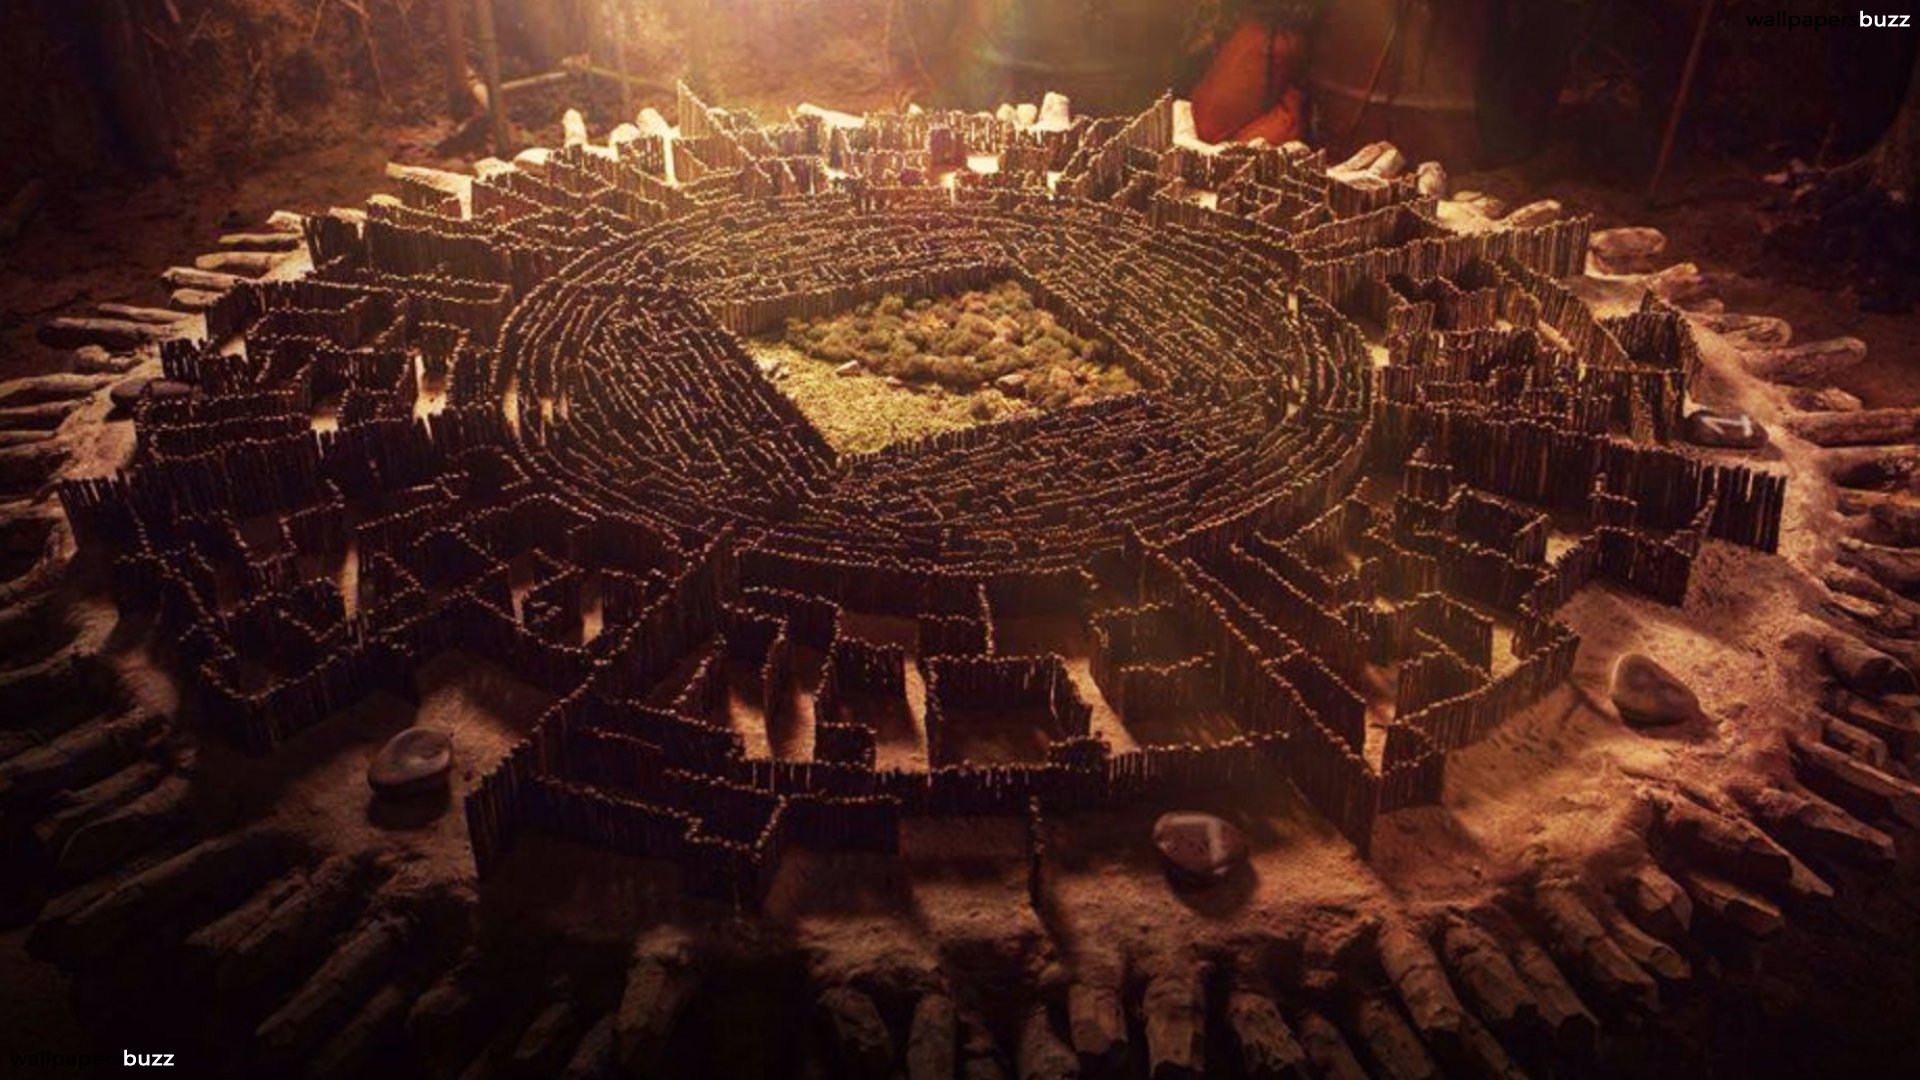 le labyrinthe est une conception qui a beaucoup inspiré les artistes